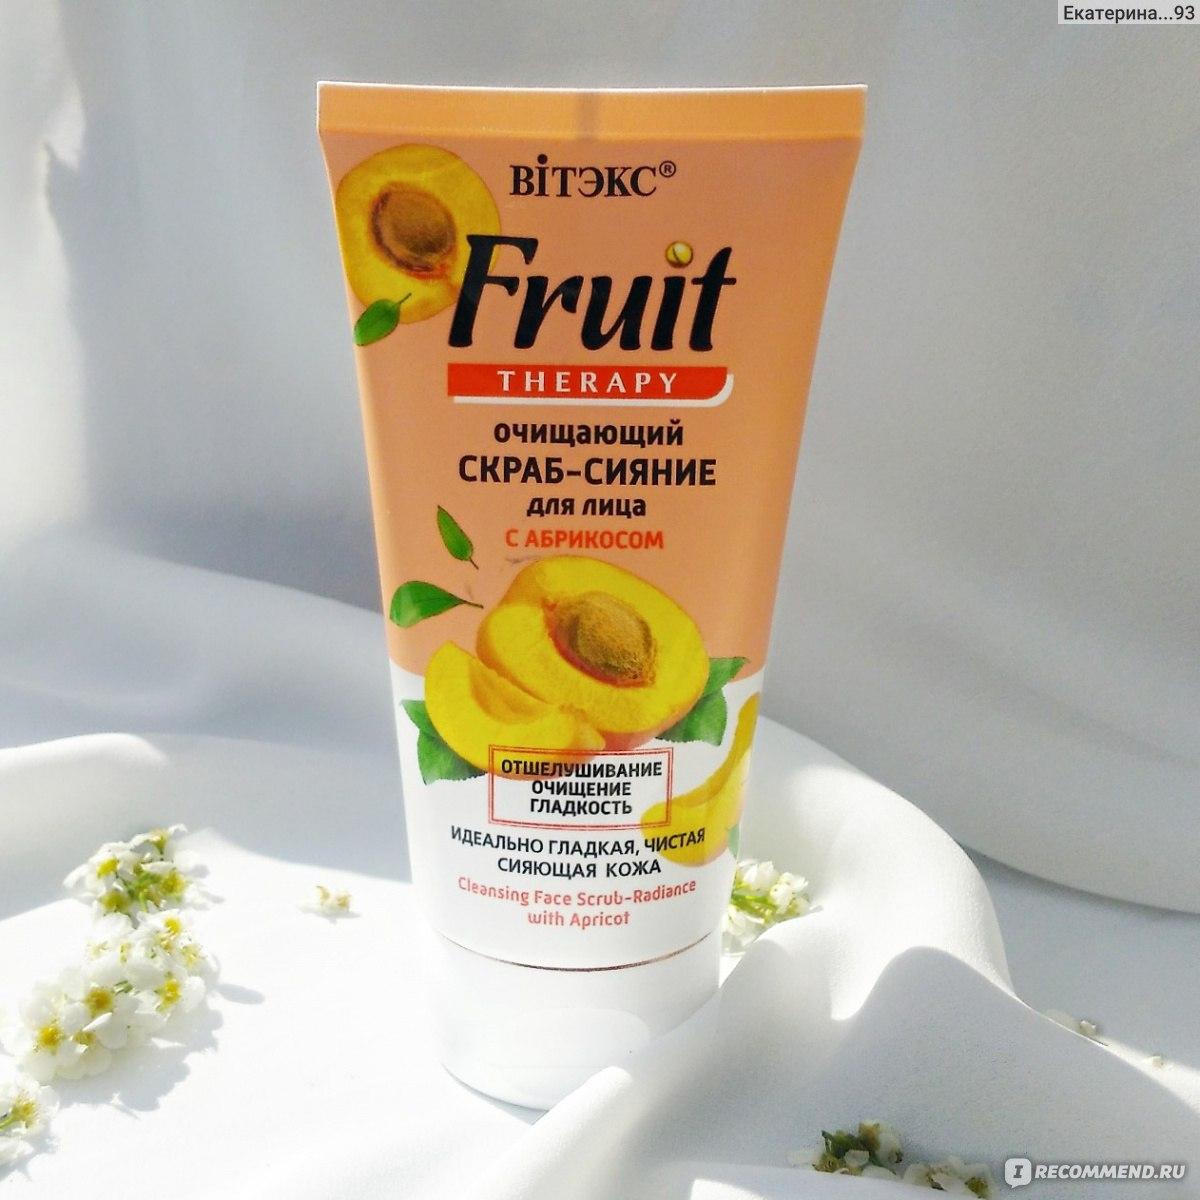 Витэкс Fruit Therapy Очищающий скраб-сияние для лица, с абрикосом